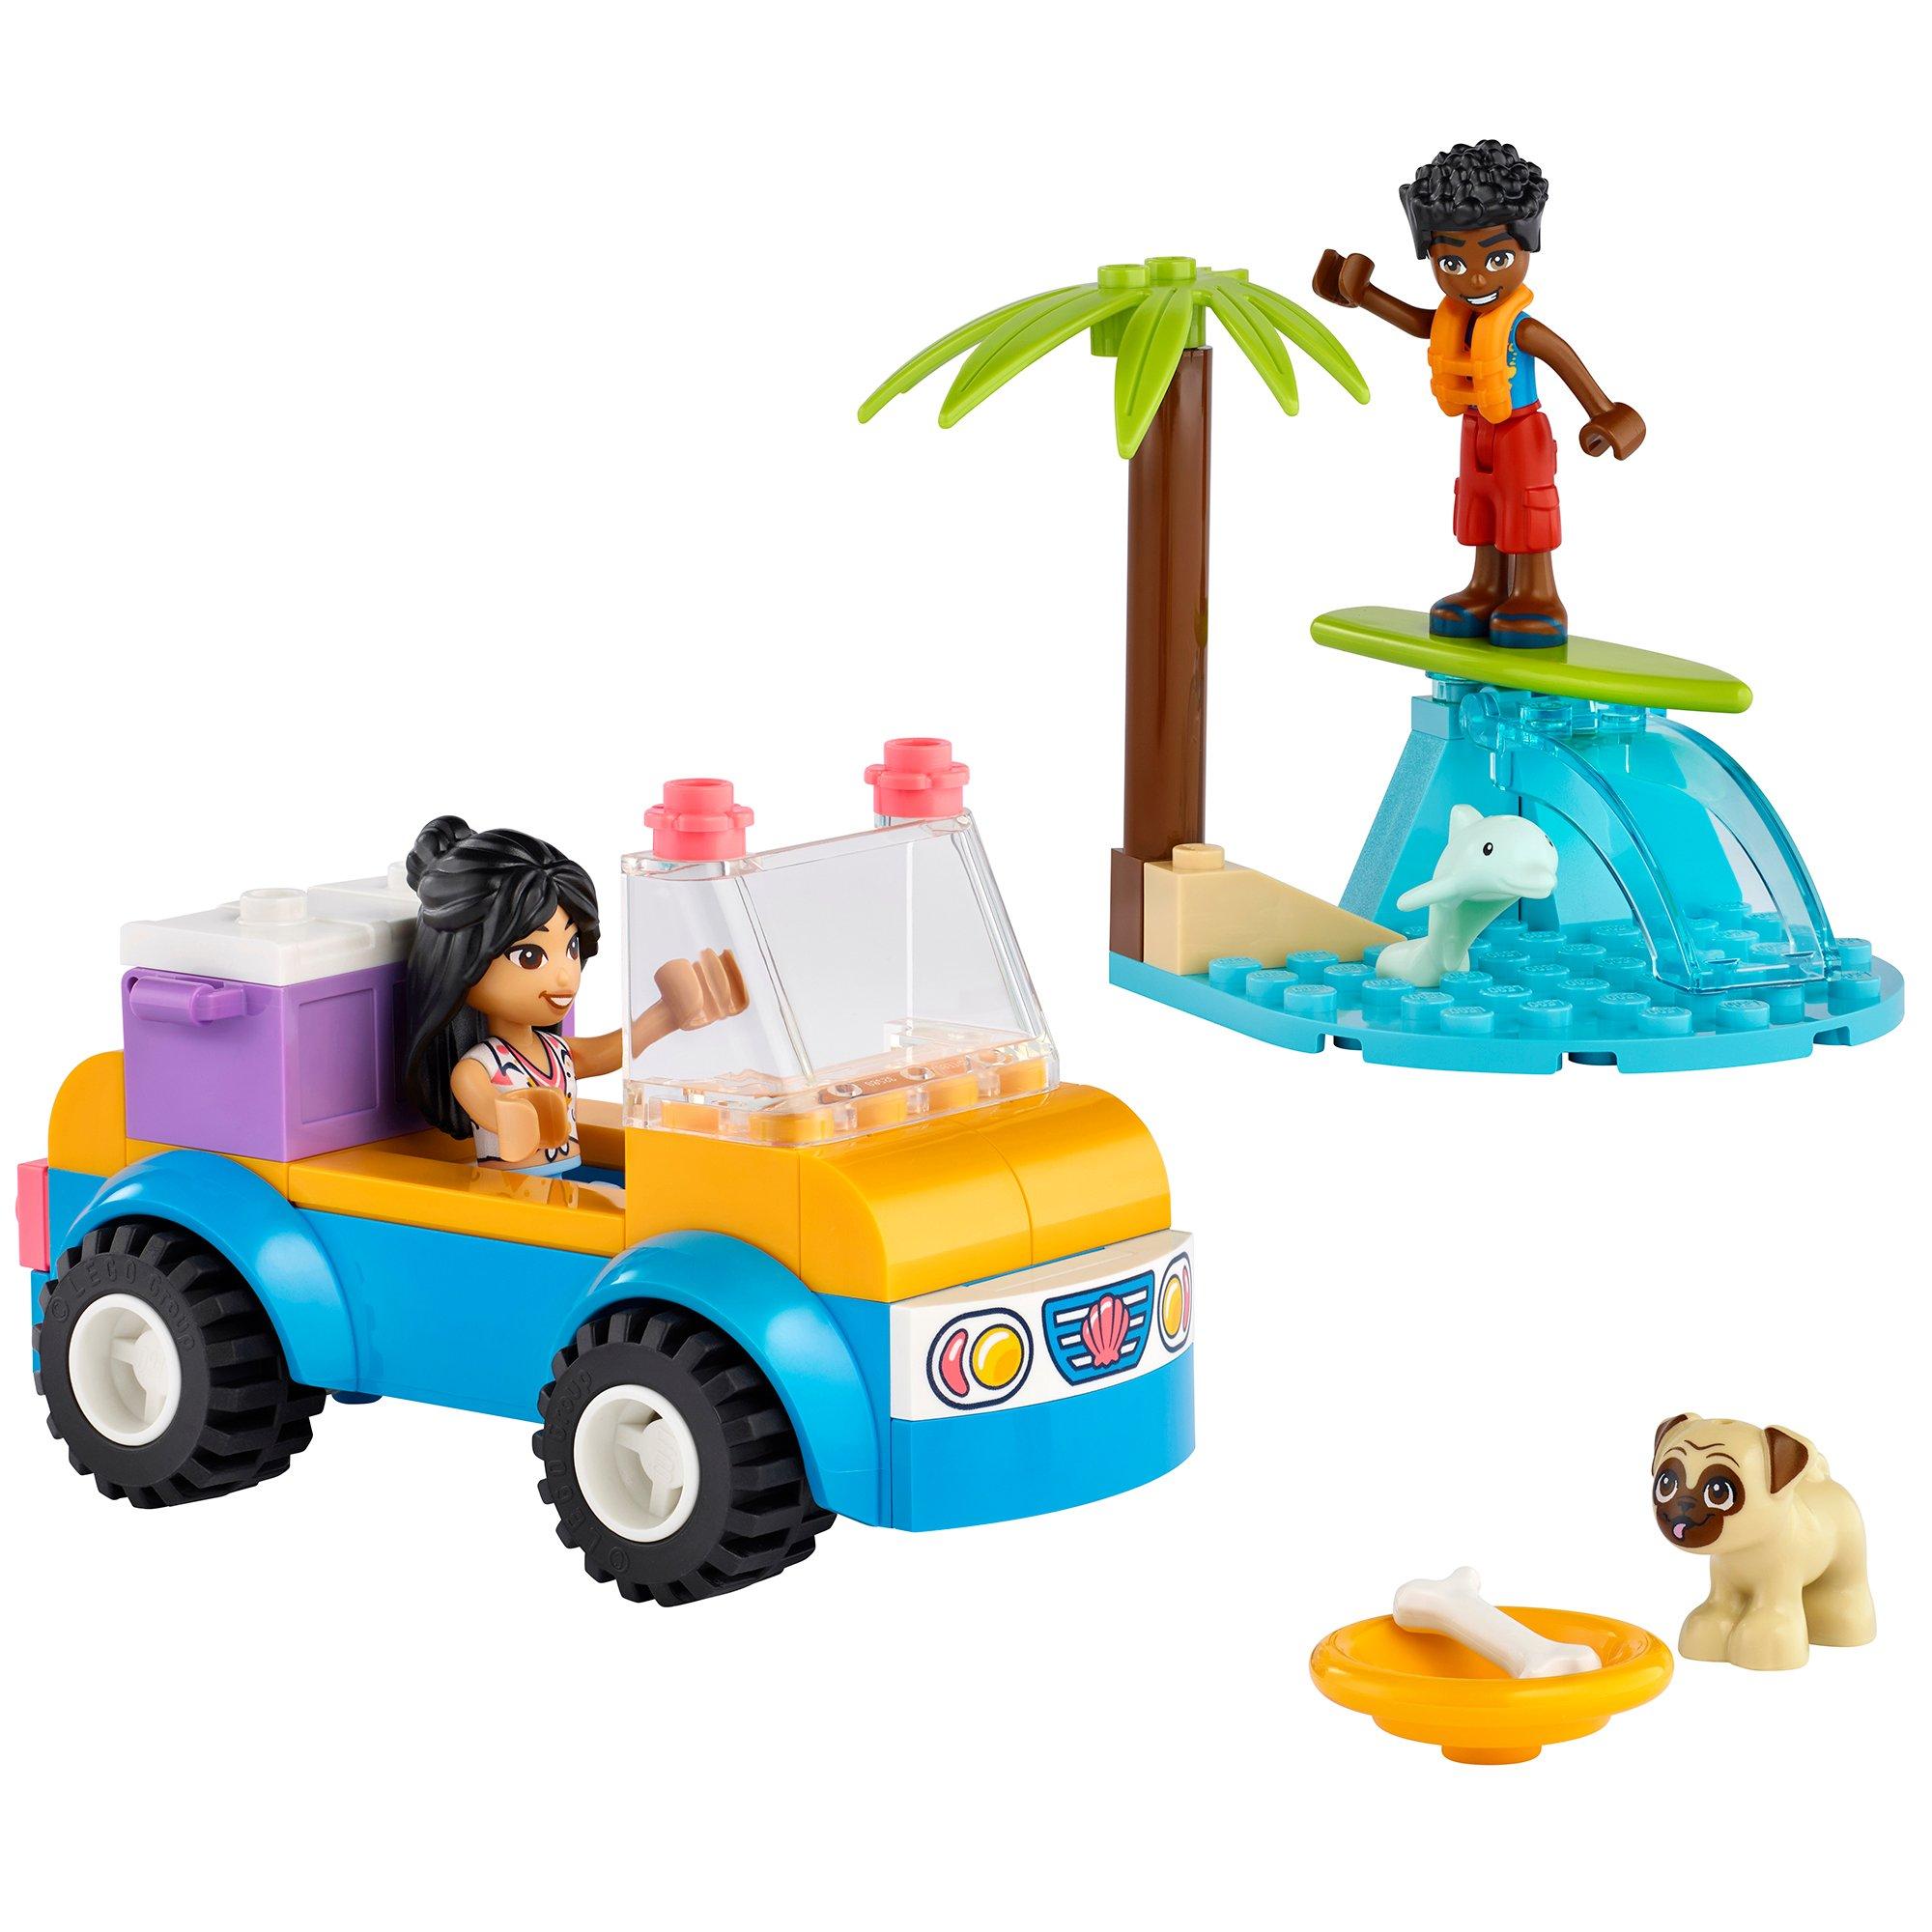 Lego Friends Beach Buggy Fun Toy Building Set